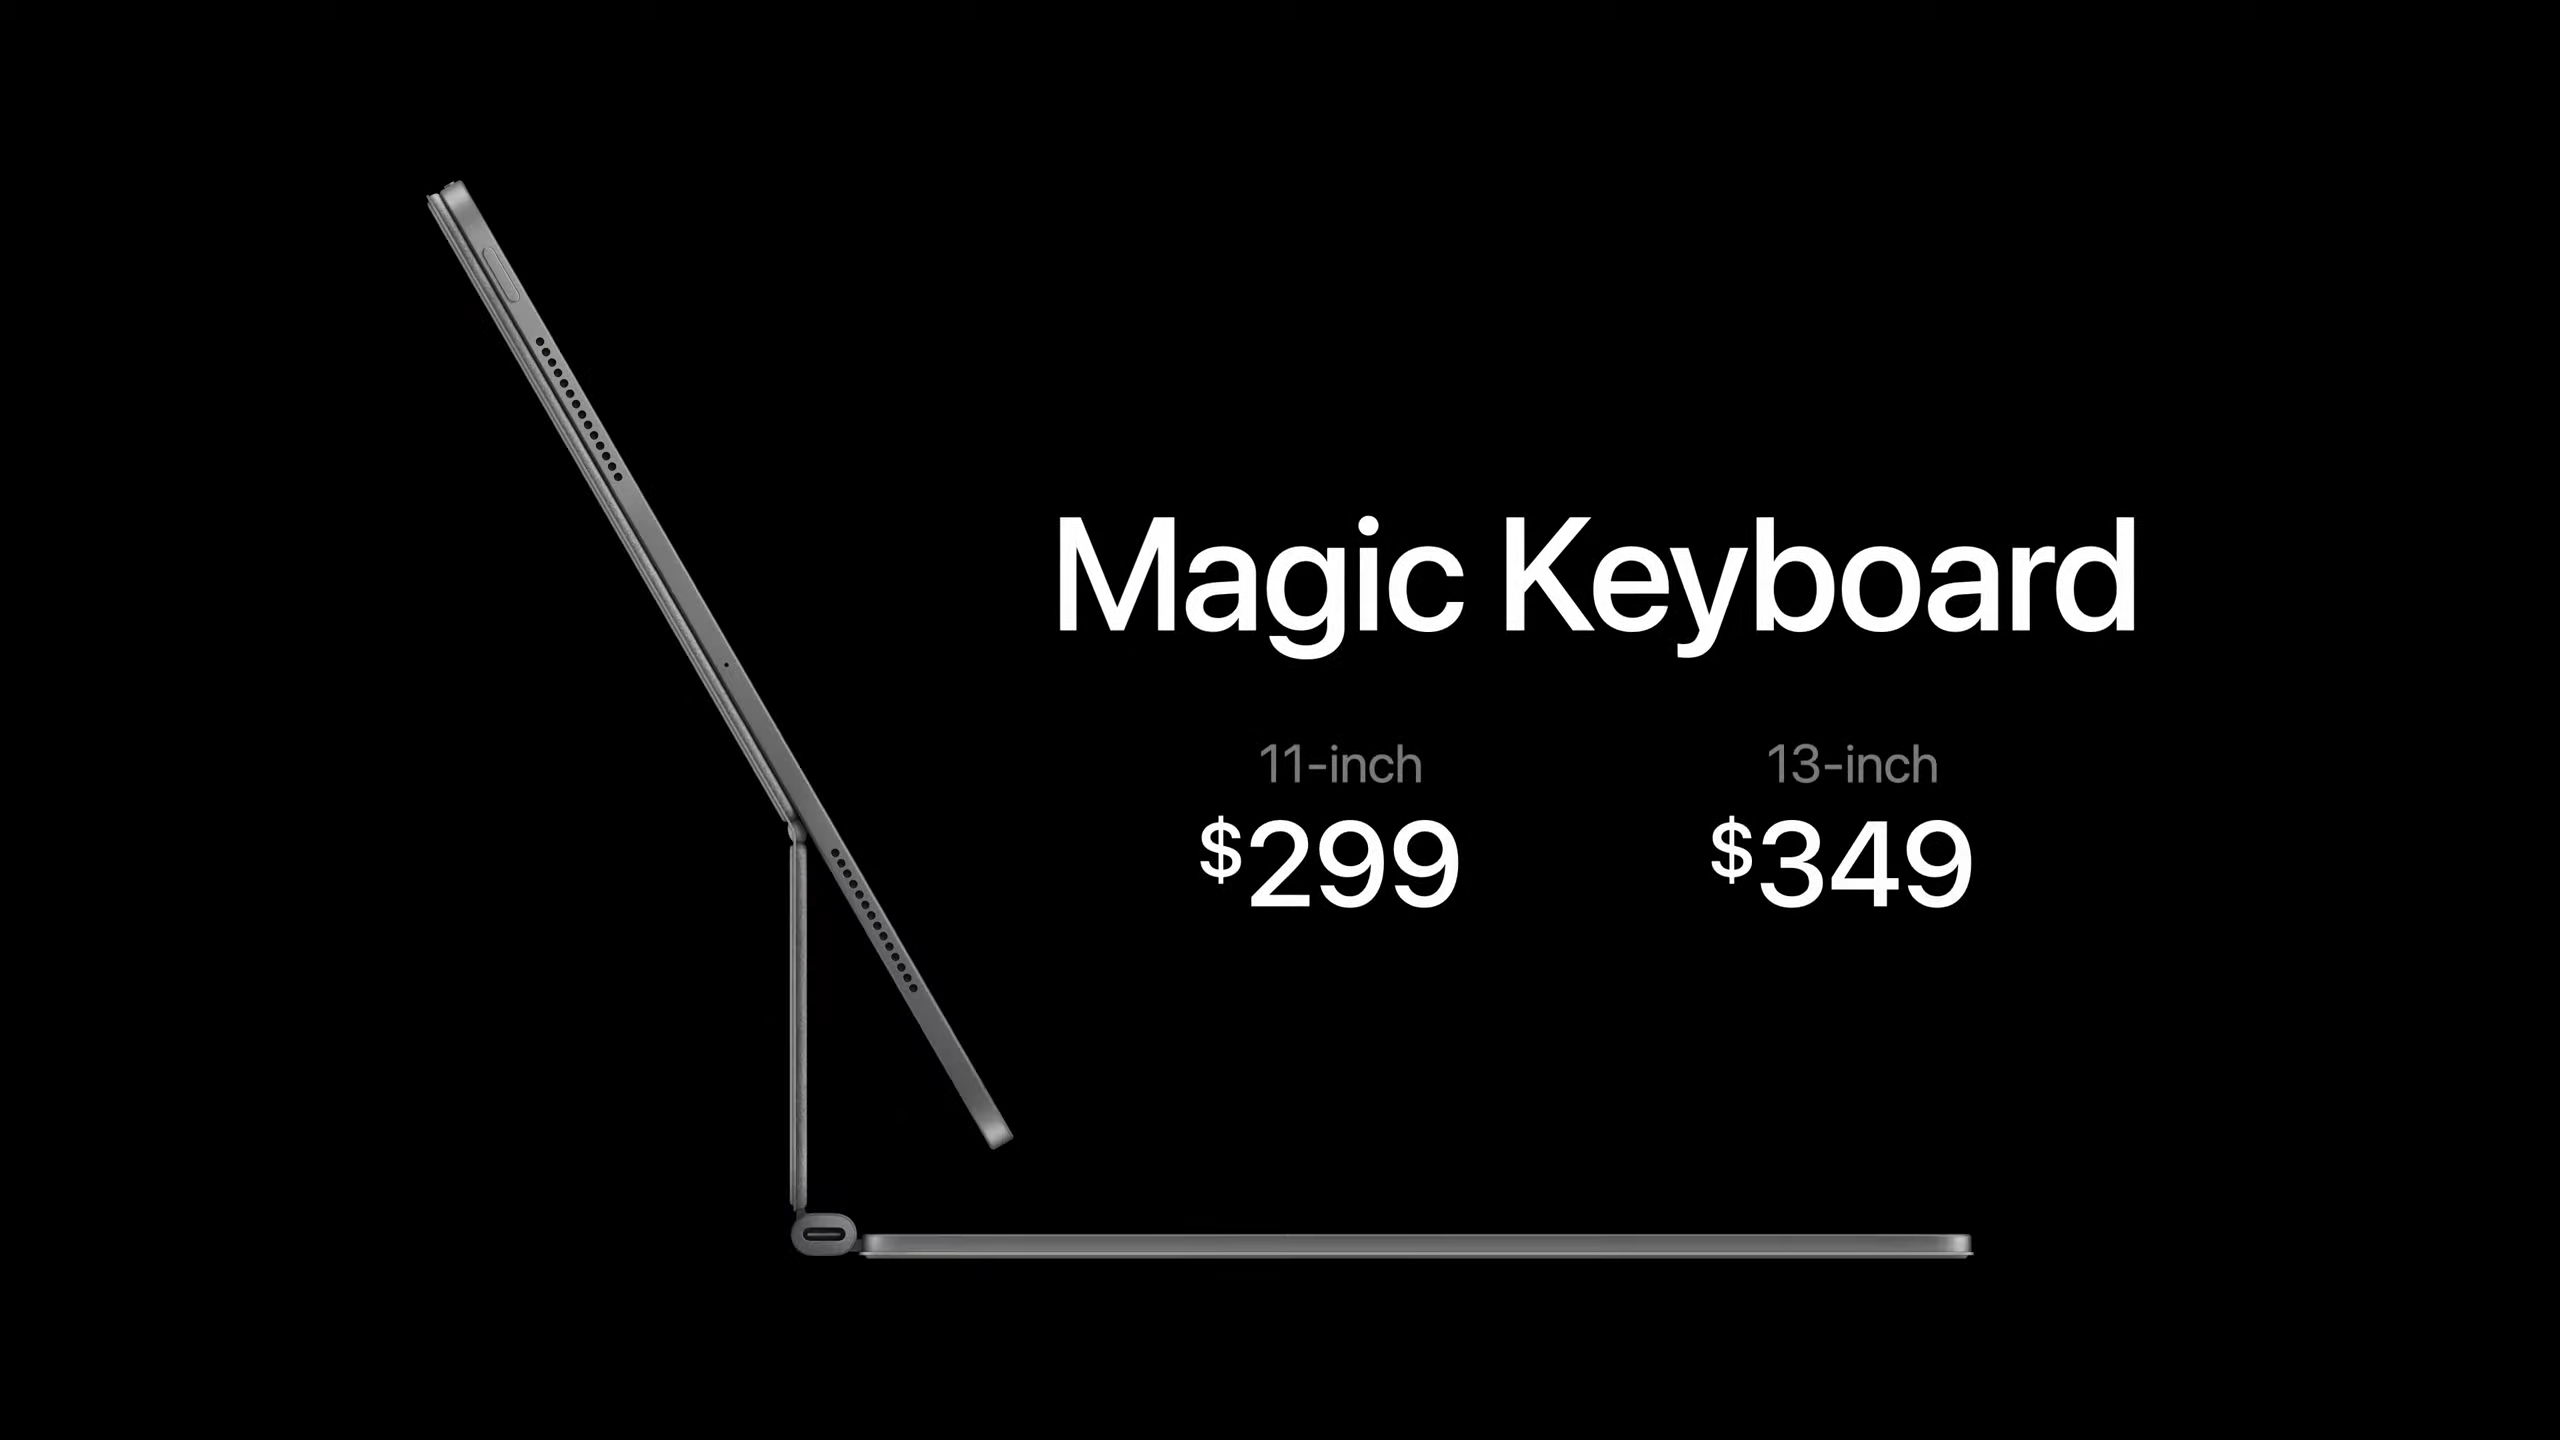 Magic Keyboard Pricing